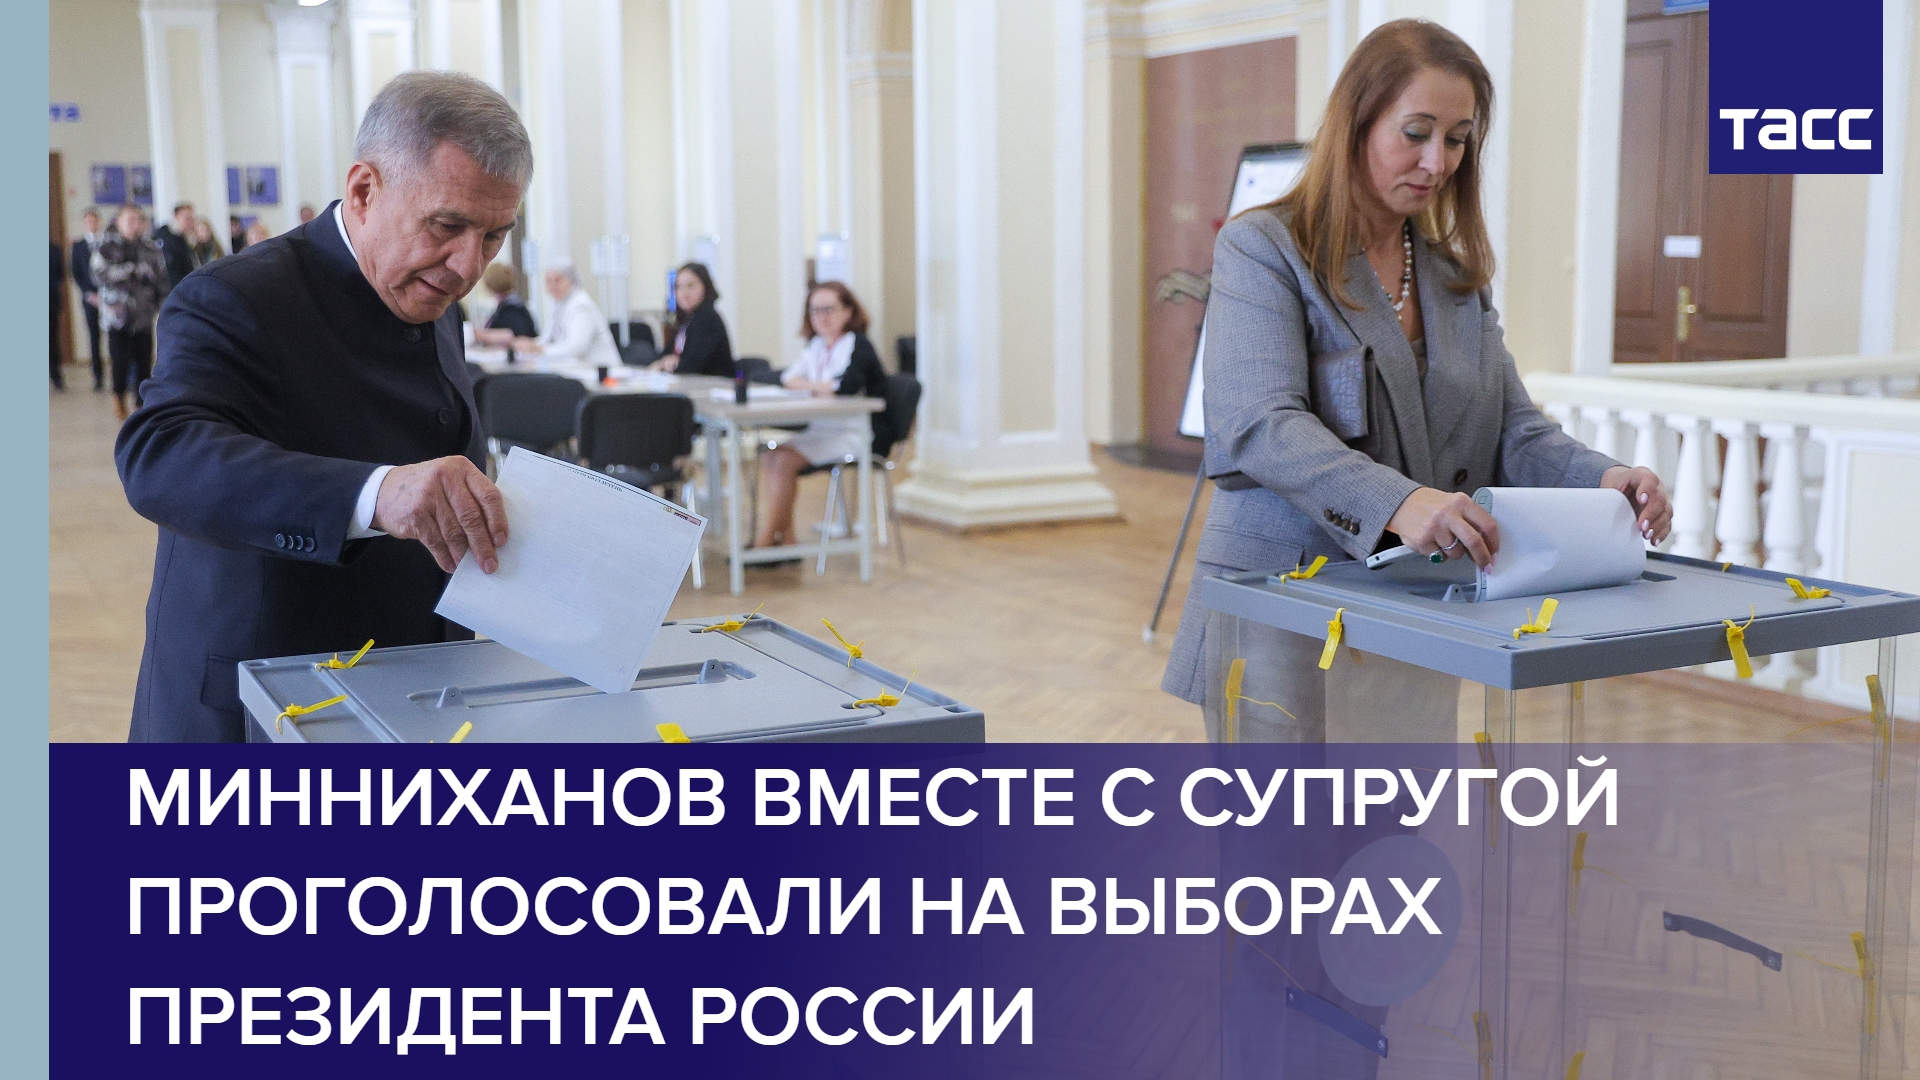 Минниханов вместе с супругой проголосовали на выборах президента России #shorts